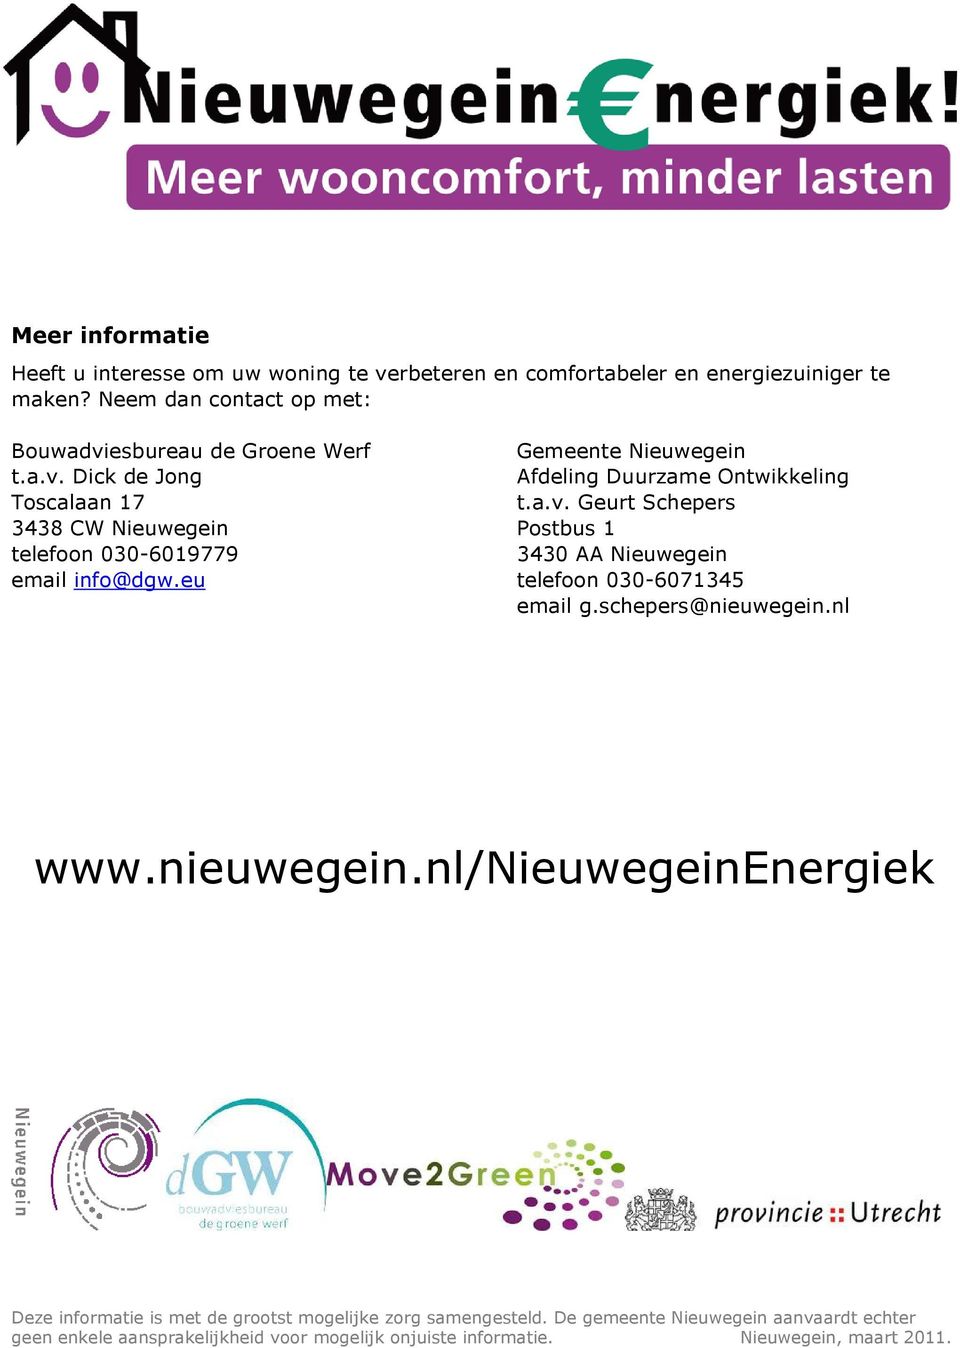 eu Gemeente Nieuwegein Afdeling Duurzame Ontwikkeling t.a.v. Geurt Schepers Postbus 1 3430 AA Nieuwegein telefoon 030-6071345 email g.schepers@nieuwegein.